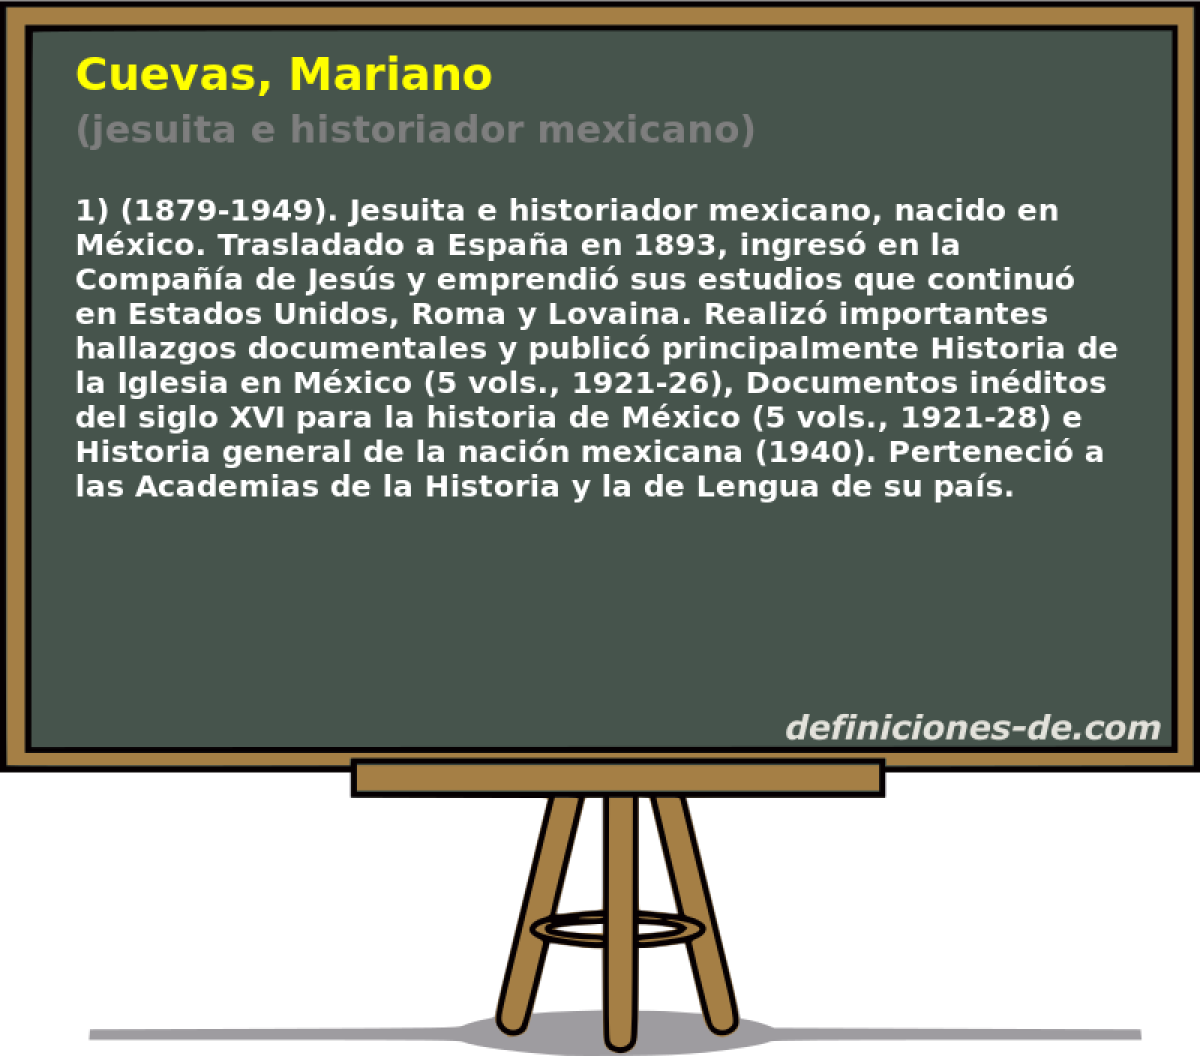 Cuevas, Mariano (jesuita e historiador mexicano)